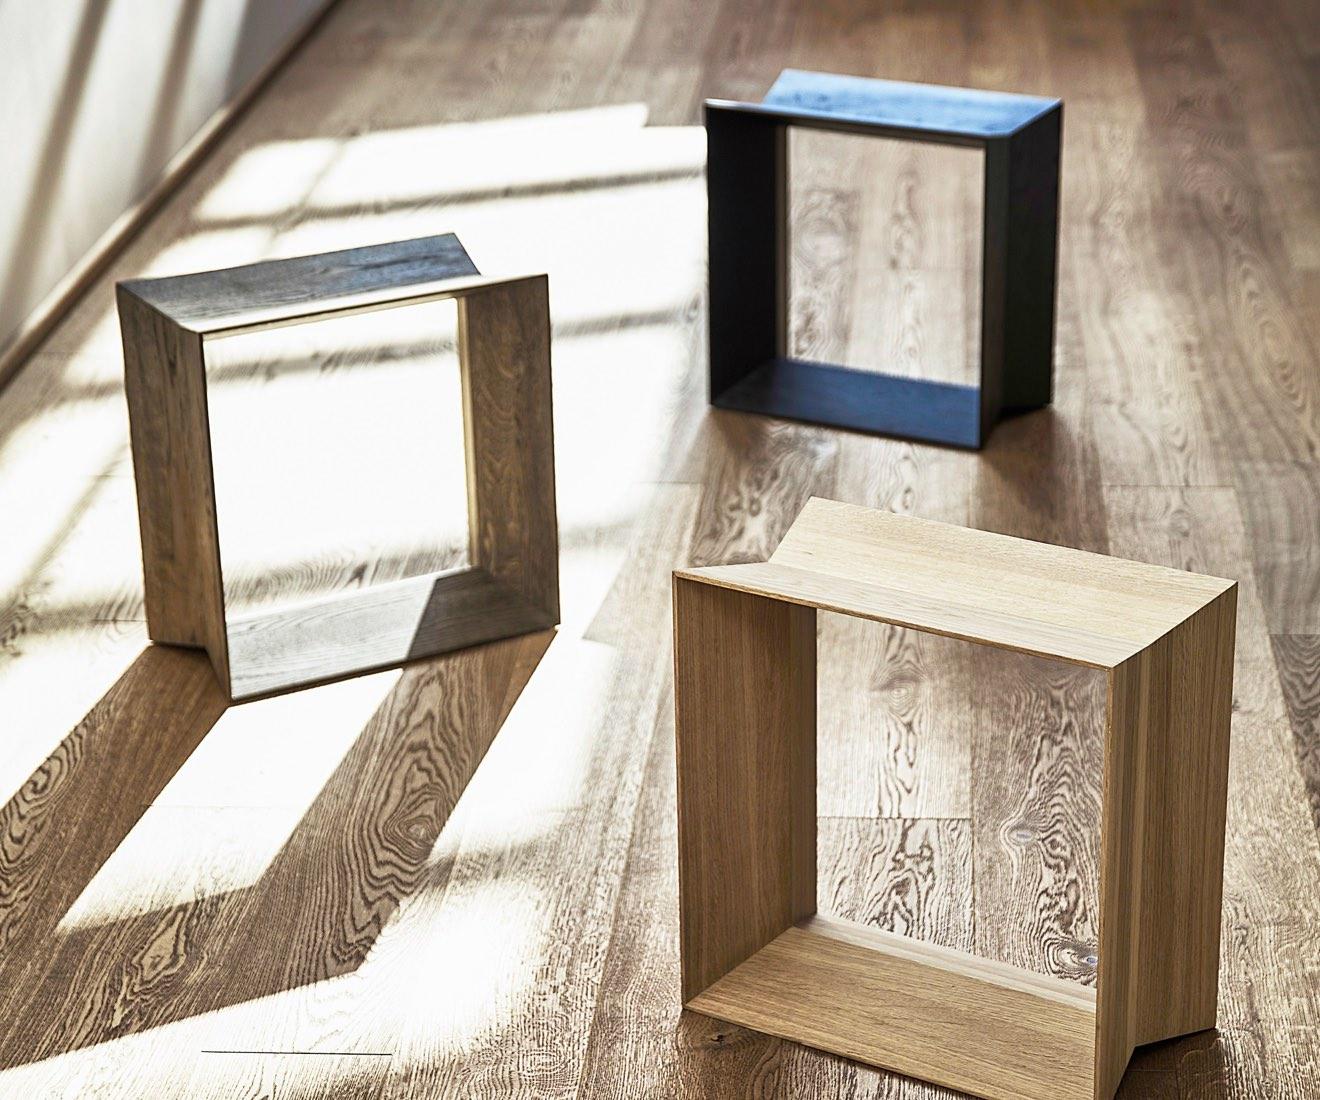 Le tabouret REFLEX est une approche sculpturale de l'assise confortable. Le tabouret est constitué d'une forme multipliée 8 fois. Le résultat est un tabouret simple dans une construction simple.

REFLEX convient à de nombreux contextes, que ce soit